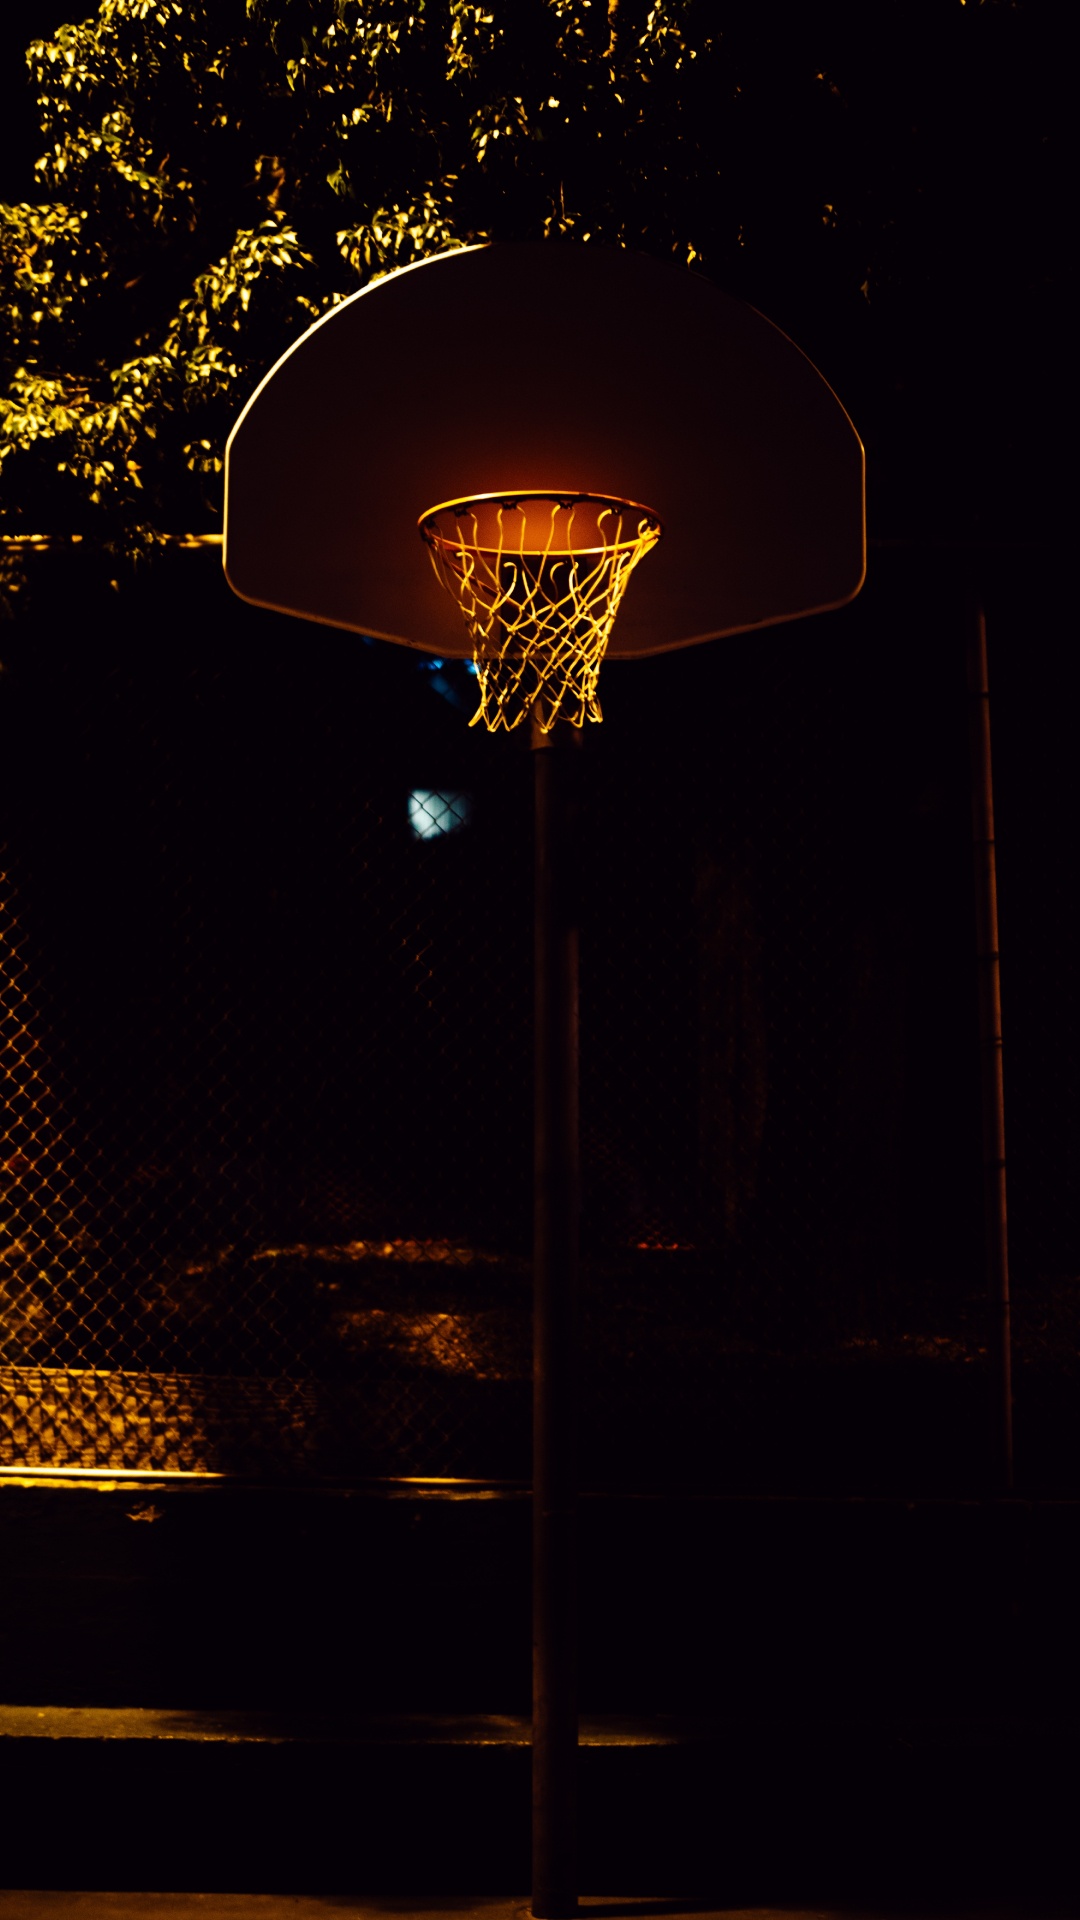 Canasta de Baloncesto Con Luz Encendida Durante la Noche.. Wallpaper in 1080x1920 Resolution